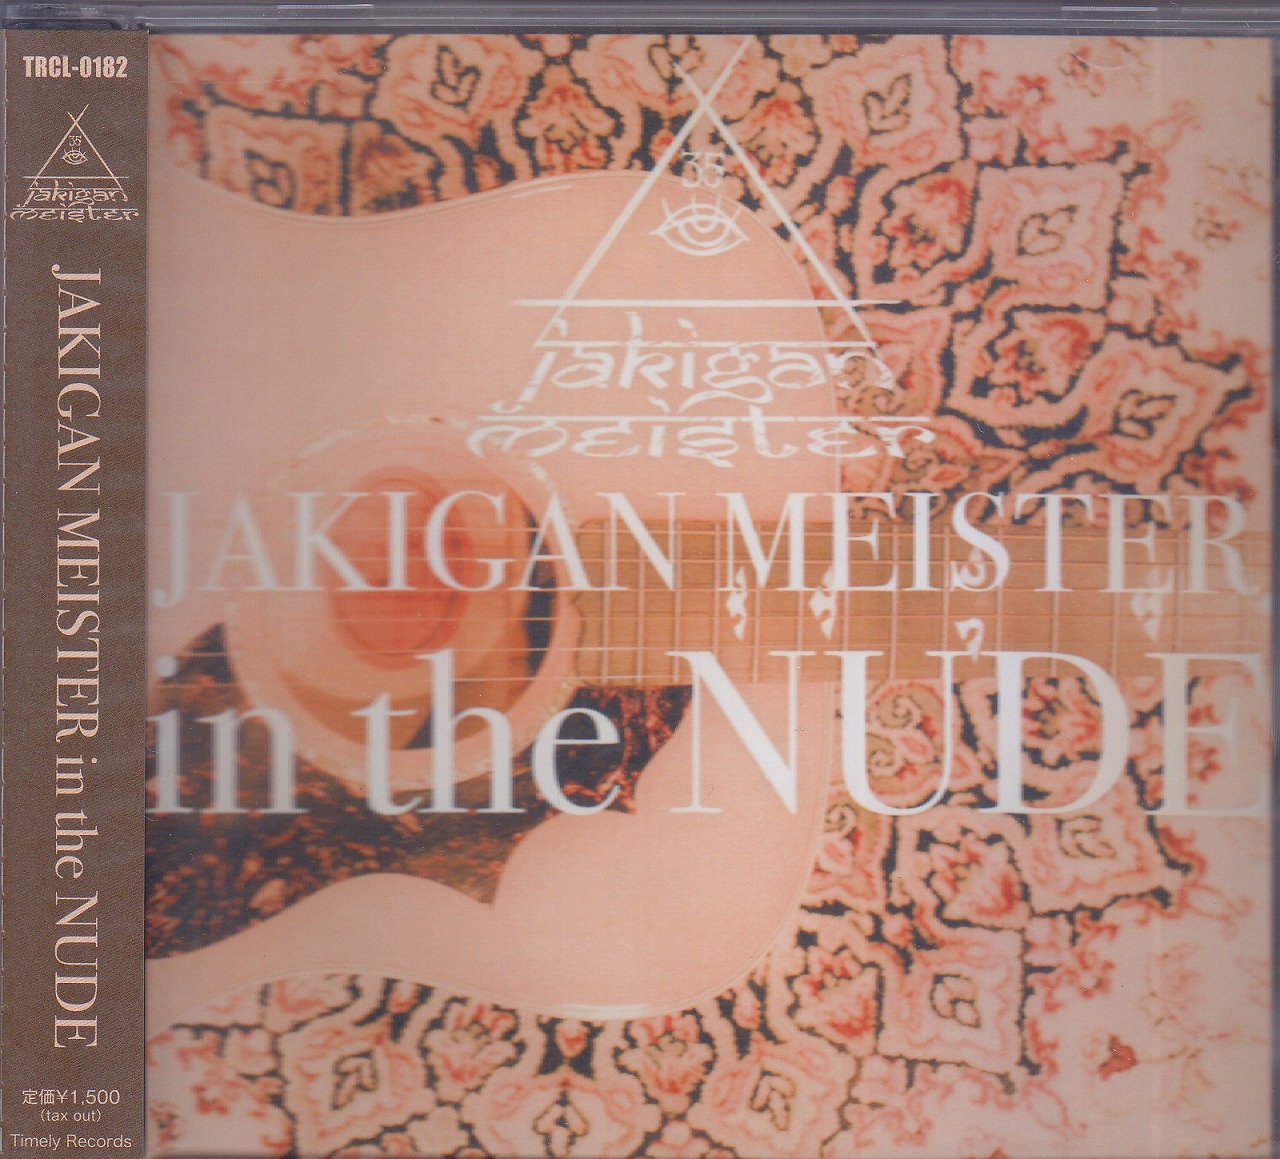 ジャキガンマイスター の CD in the NUDE